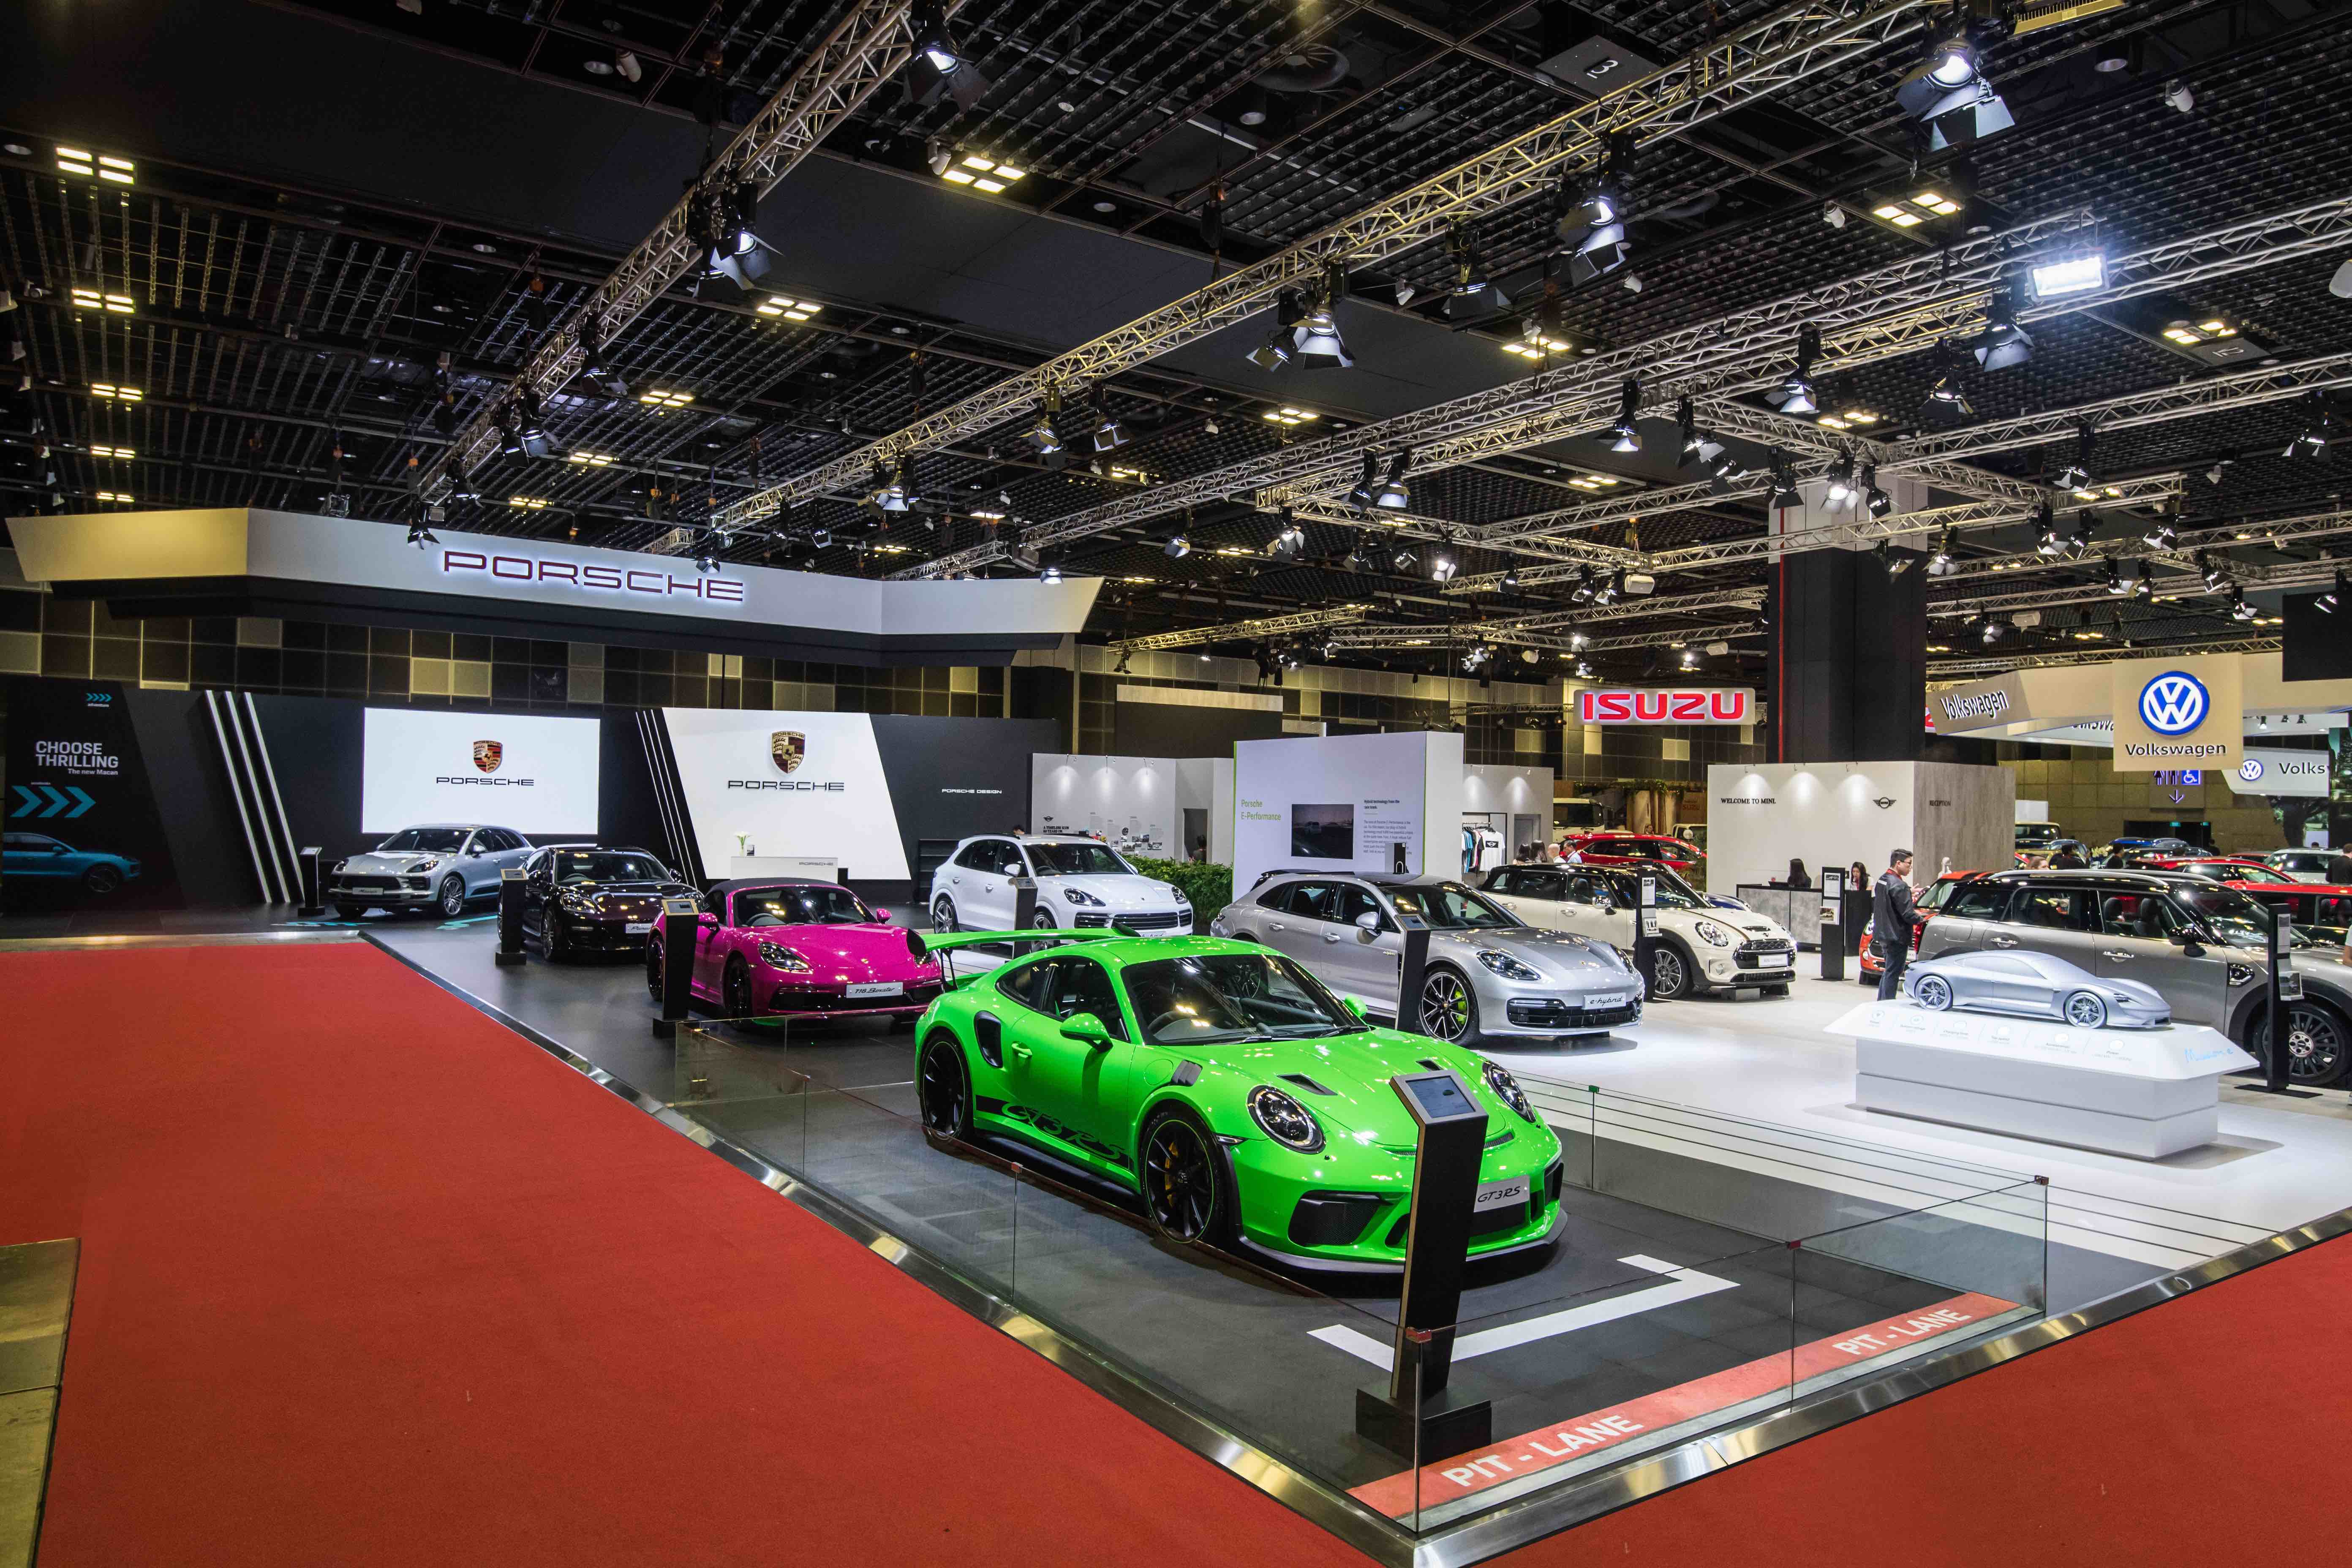 Porsche at the Singapore Motorshow 2019